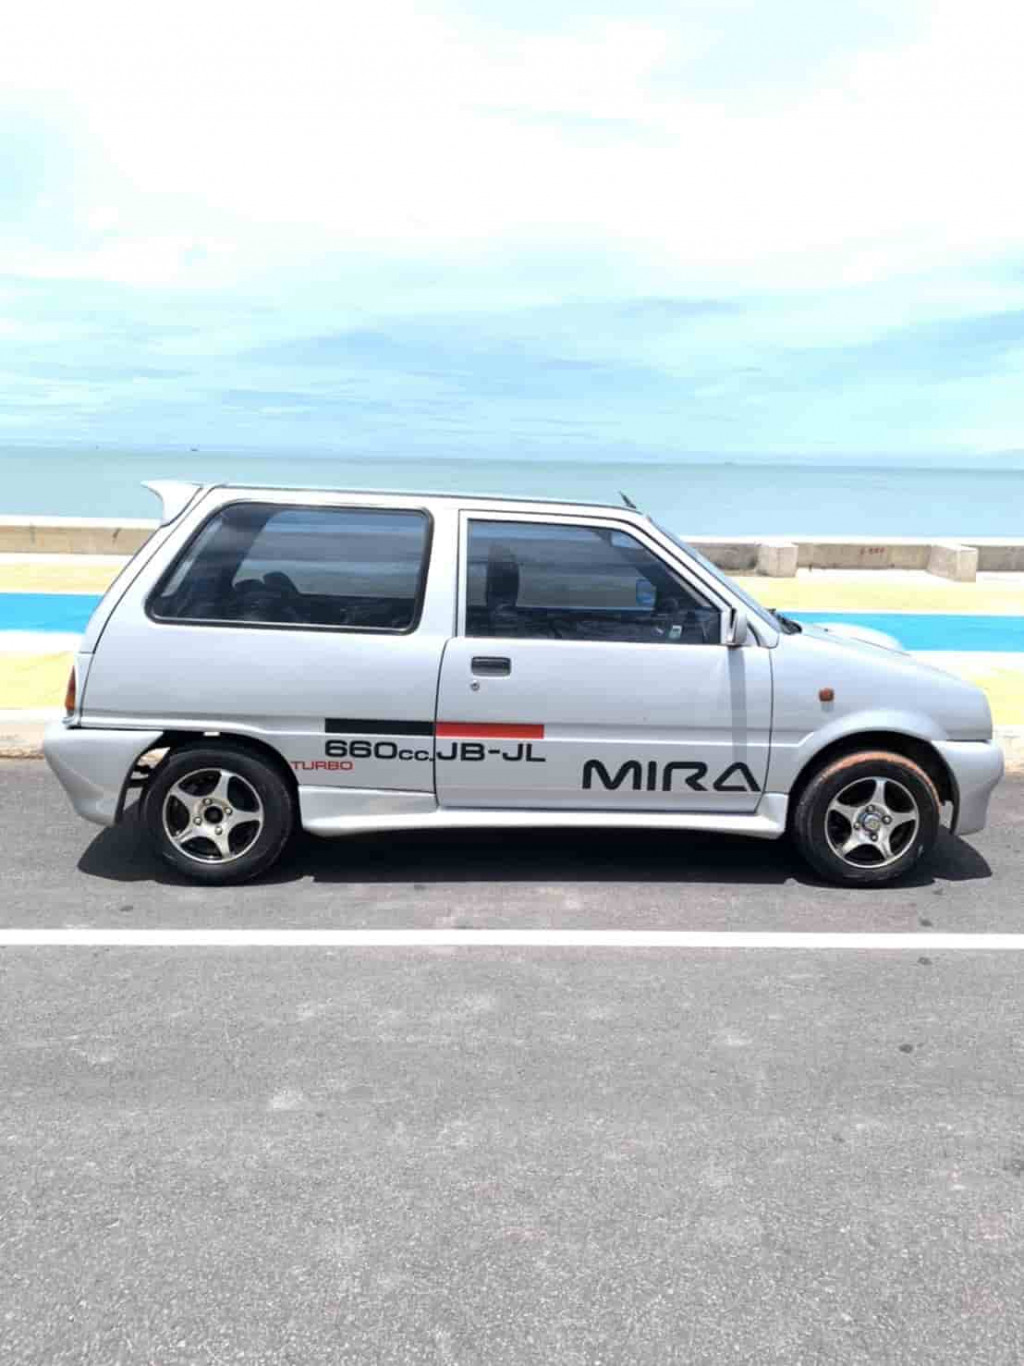 รถมือสอง DAIHATSU MIRA 2004 ขายอยู่บนเว็บไซต์ตลาดรถออนไลน์ GUCARS